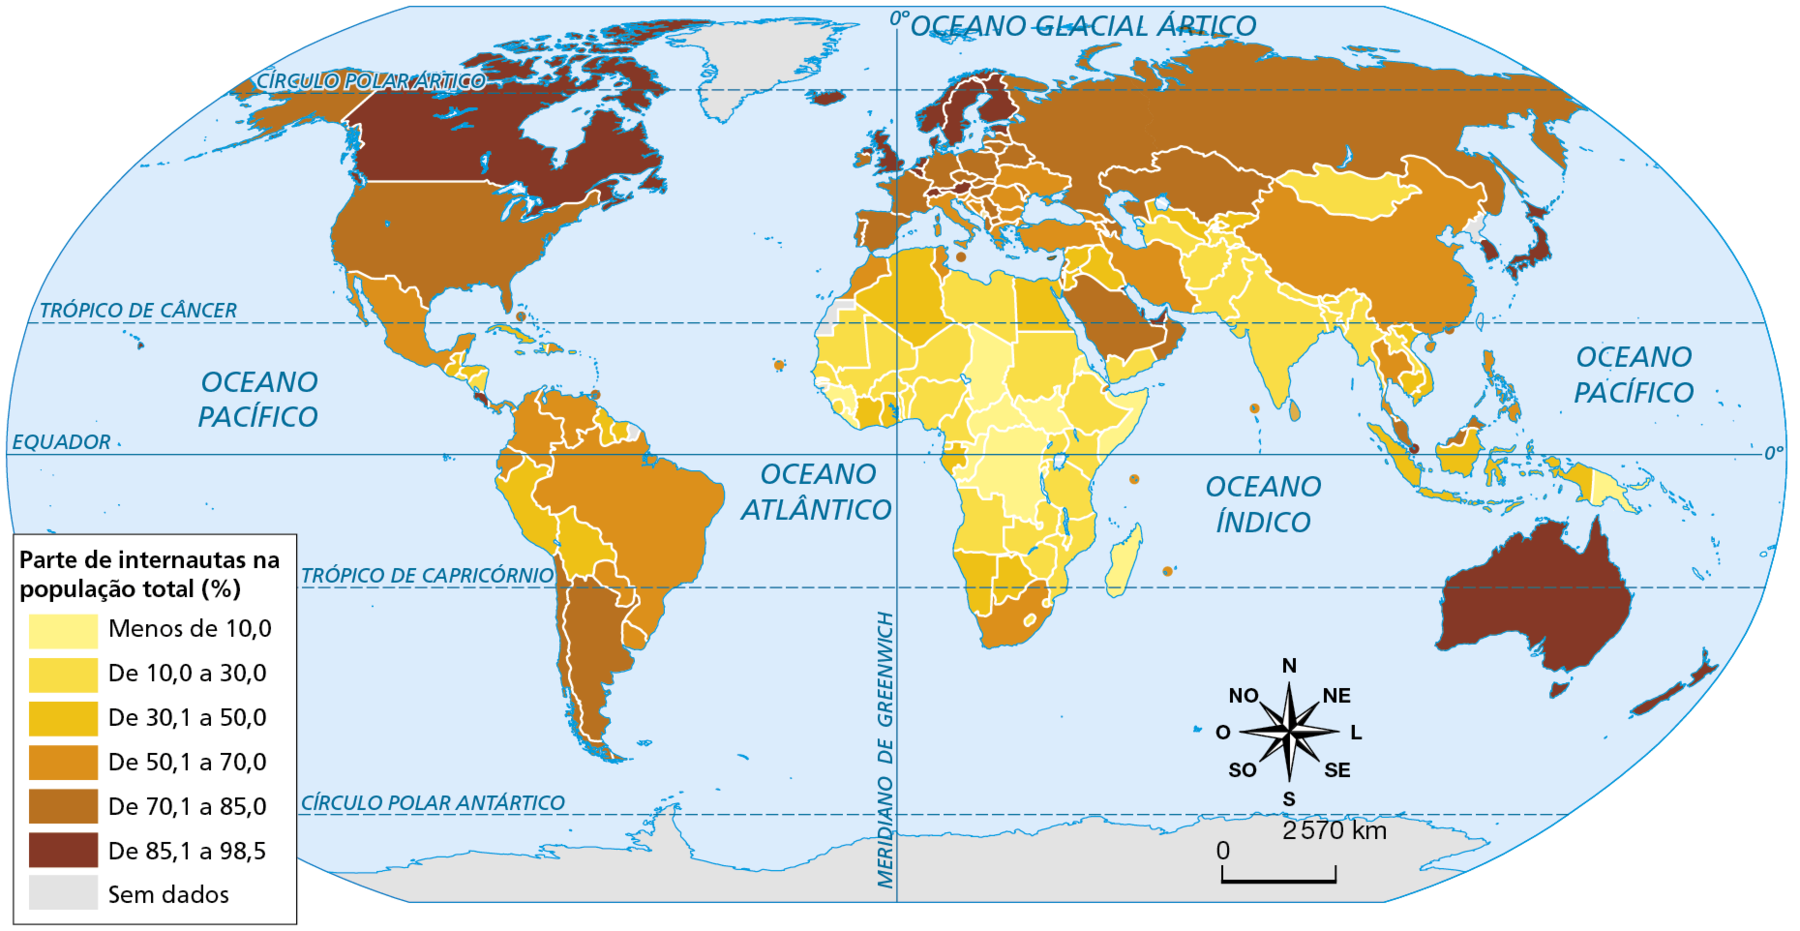 Mapa. Planisfério: população com acesso à internet,  2017. Mapa mostrando o percentual de internautas nos países. Menos de 10,0%: República Democrática do Congo, Gabão, República Centro-Africana, Chade, Uganda, Madagascar, Somália, Libéria, Guiné. De 10,0 a 30,0%: Angola, Moçambique, Zimbábue, Zâmbia, Tanzânia, Quênia, Etiópia, Sudão, Líbia, Níger, Nigéria, Mali, Mauritânia, Senegal; Índia, Afeganistão, Paquistão, Bangladesh, Mianmar, Mongólia. De 30,1 a 50,0%: Peru, Bolívia, Guatemala, Honduras, Cuba; Argélia, Egito, Namíbia, Botsuana; Síria, Iraque; Indonésia. De 50,1 a 70,0%: Brasil, México, Venezuela, Colômbia, Equador, Paraguai, Uruguai, África do Sul, Irã, Turquia, Romênia, Ucrânia, Itália, Grécia, China. De 70,1 a 85,0%: Estados Unidos, Argentina, Chile, Emirados Árabes, Portugal, Espanha, França, Alemanha, Polônia, Rússia, Cazaquistão. De 85,1 a 98,5%: Canadá, Reno Unido, Suécia, Finlândia, Noruega, Islândia, Japão, Austrália. Sem dados: Groenlândia, Antártida. Na parte inferior direita,  rosa dos ventos e a escala de 0 a 2.570 quilômetros.